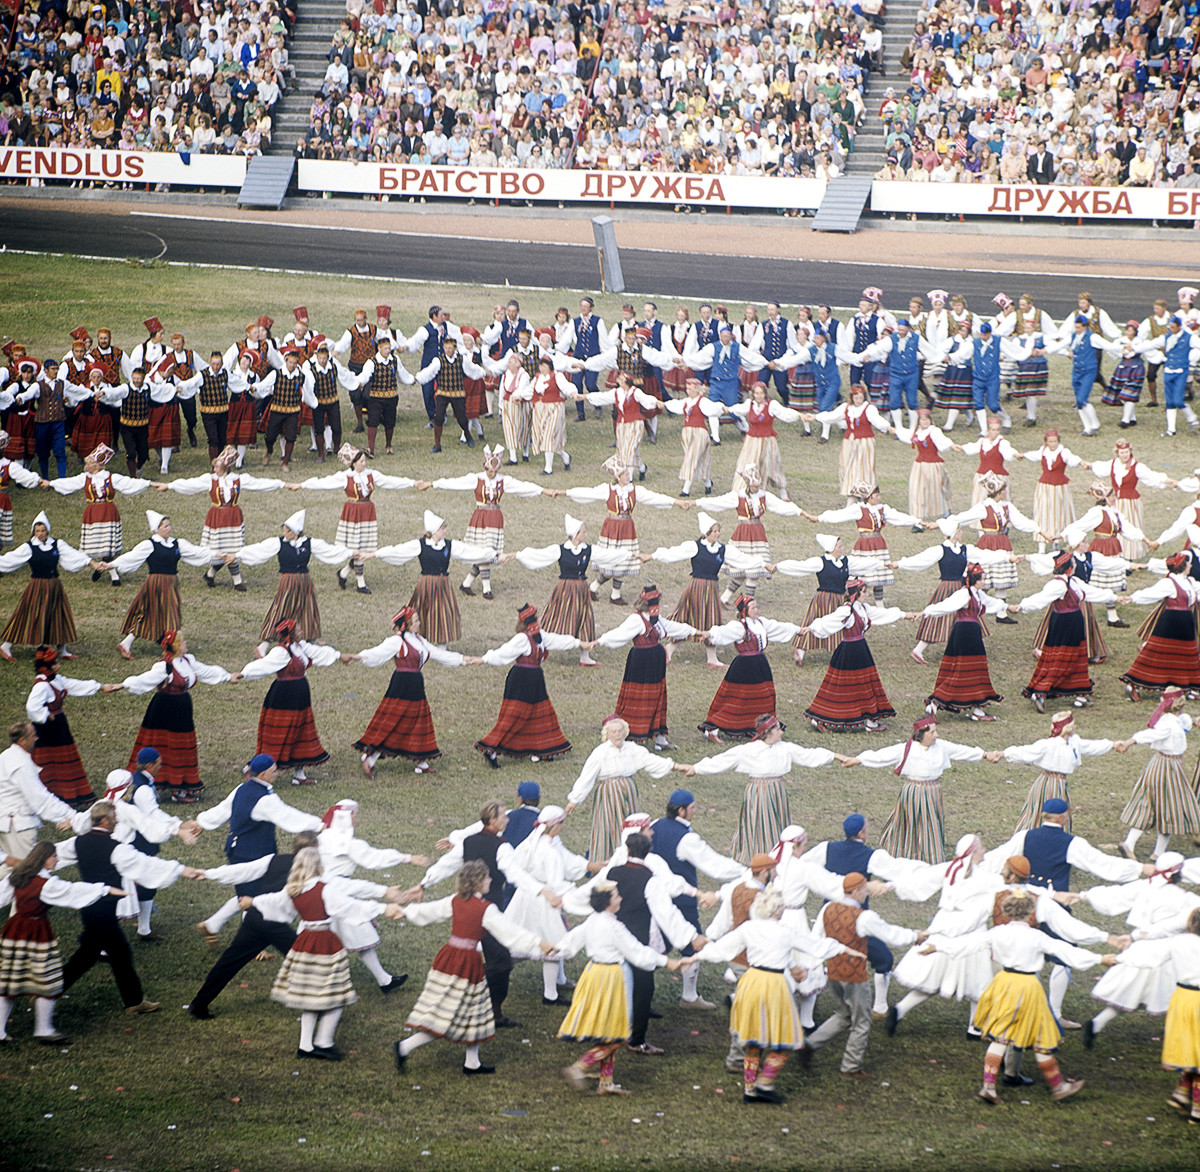 Republikanisches Lied- und Tanzfestival in Tallinn, 1976